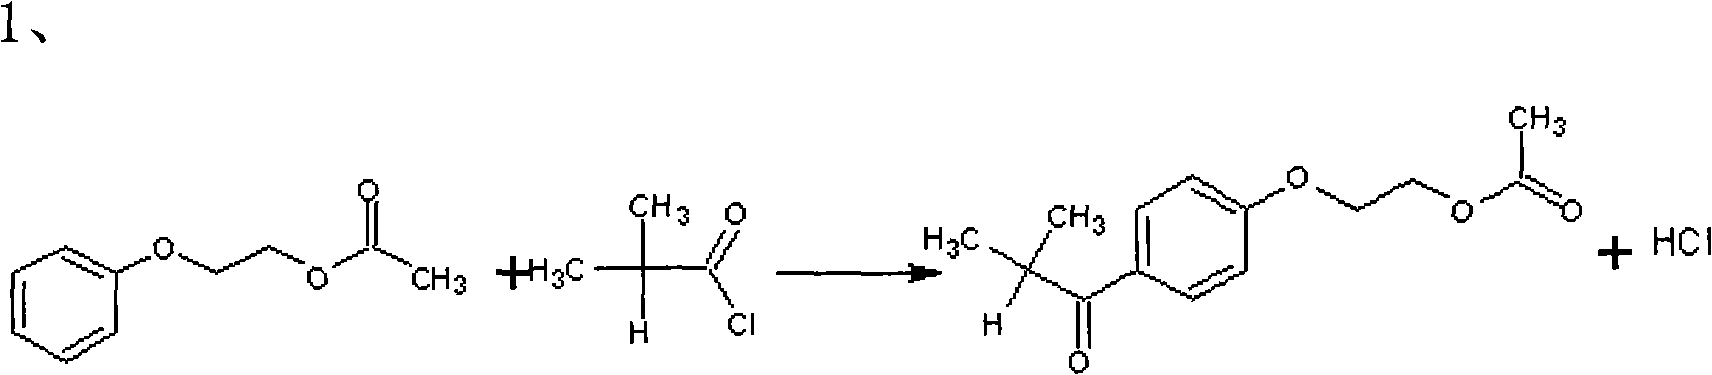 Preparation method of 2-hydroxyl-1-{4-(2-hydroxyethyl) phenyl}-2-methyl-1-acetone